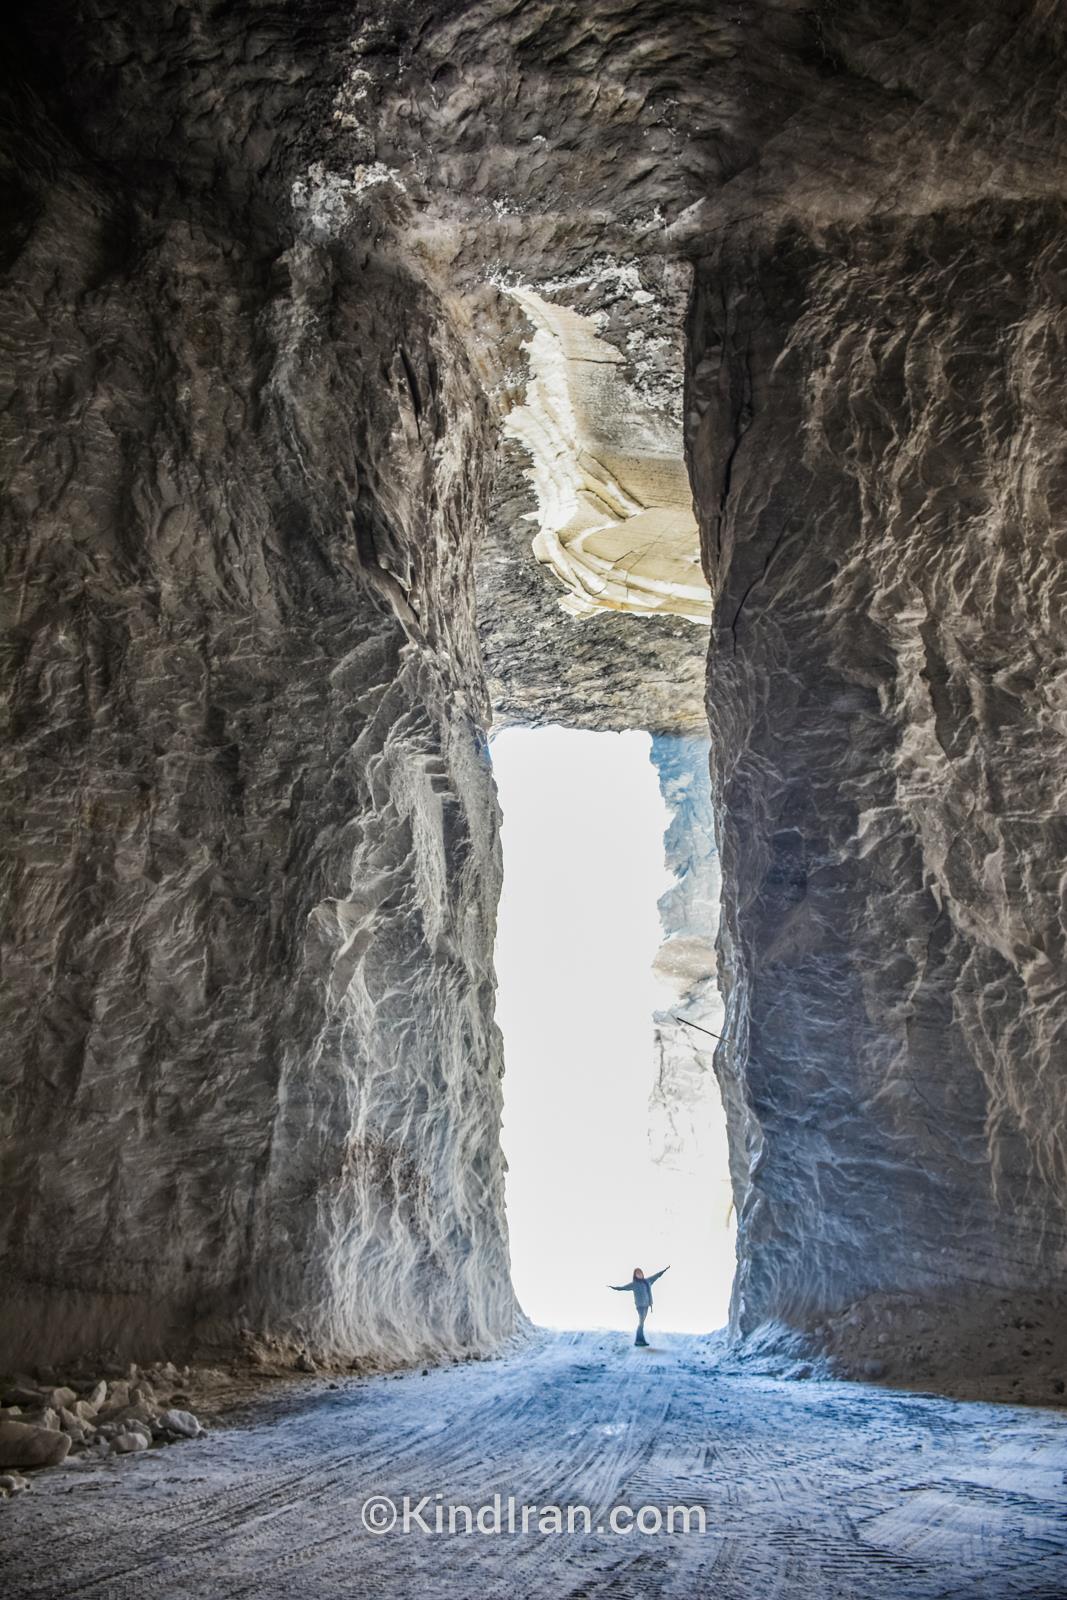 加姆萨尔盐矿；一些新的隧道